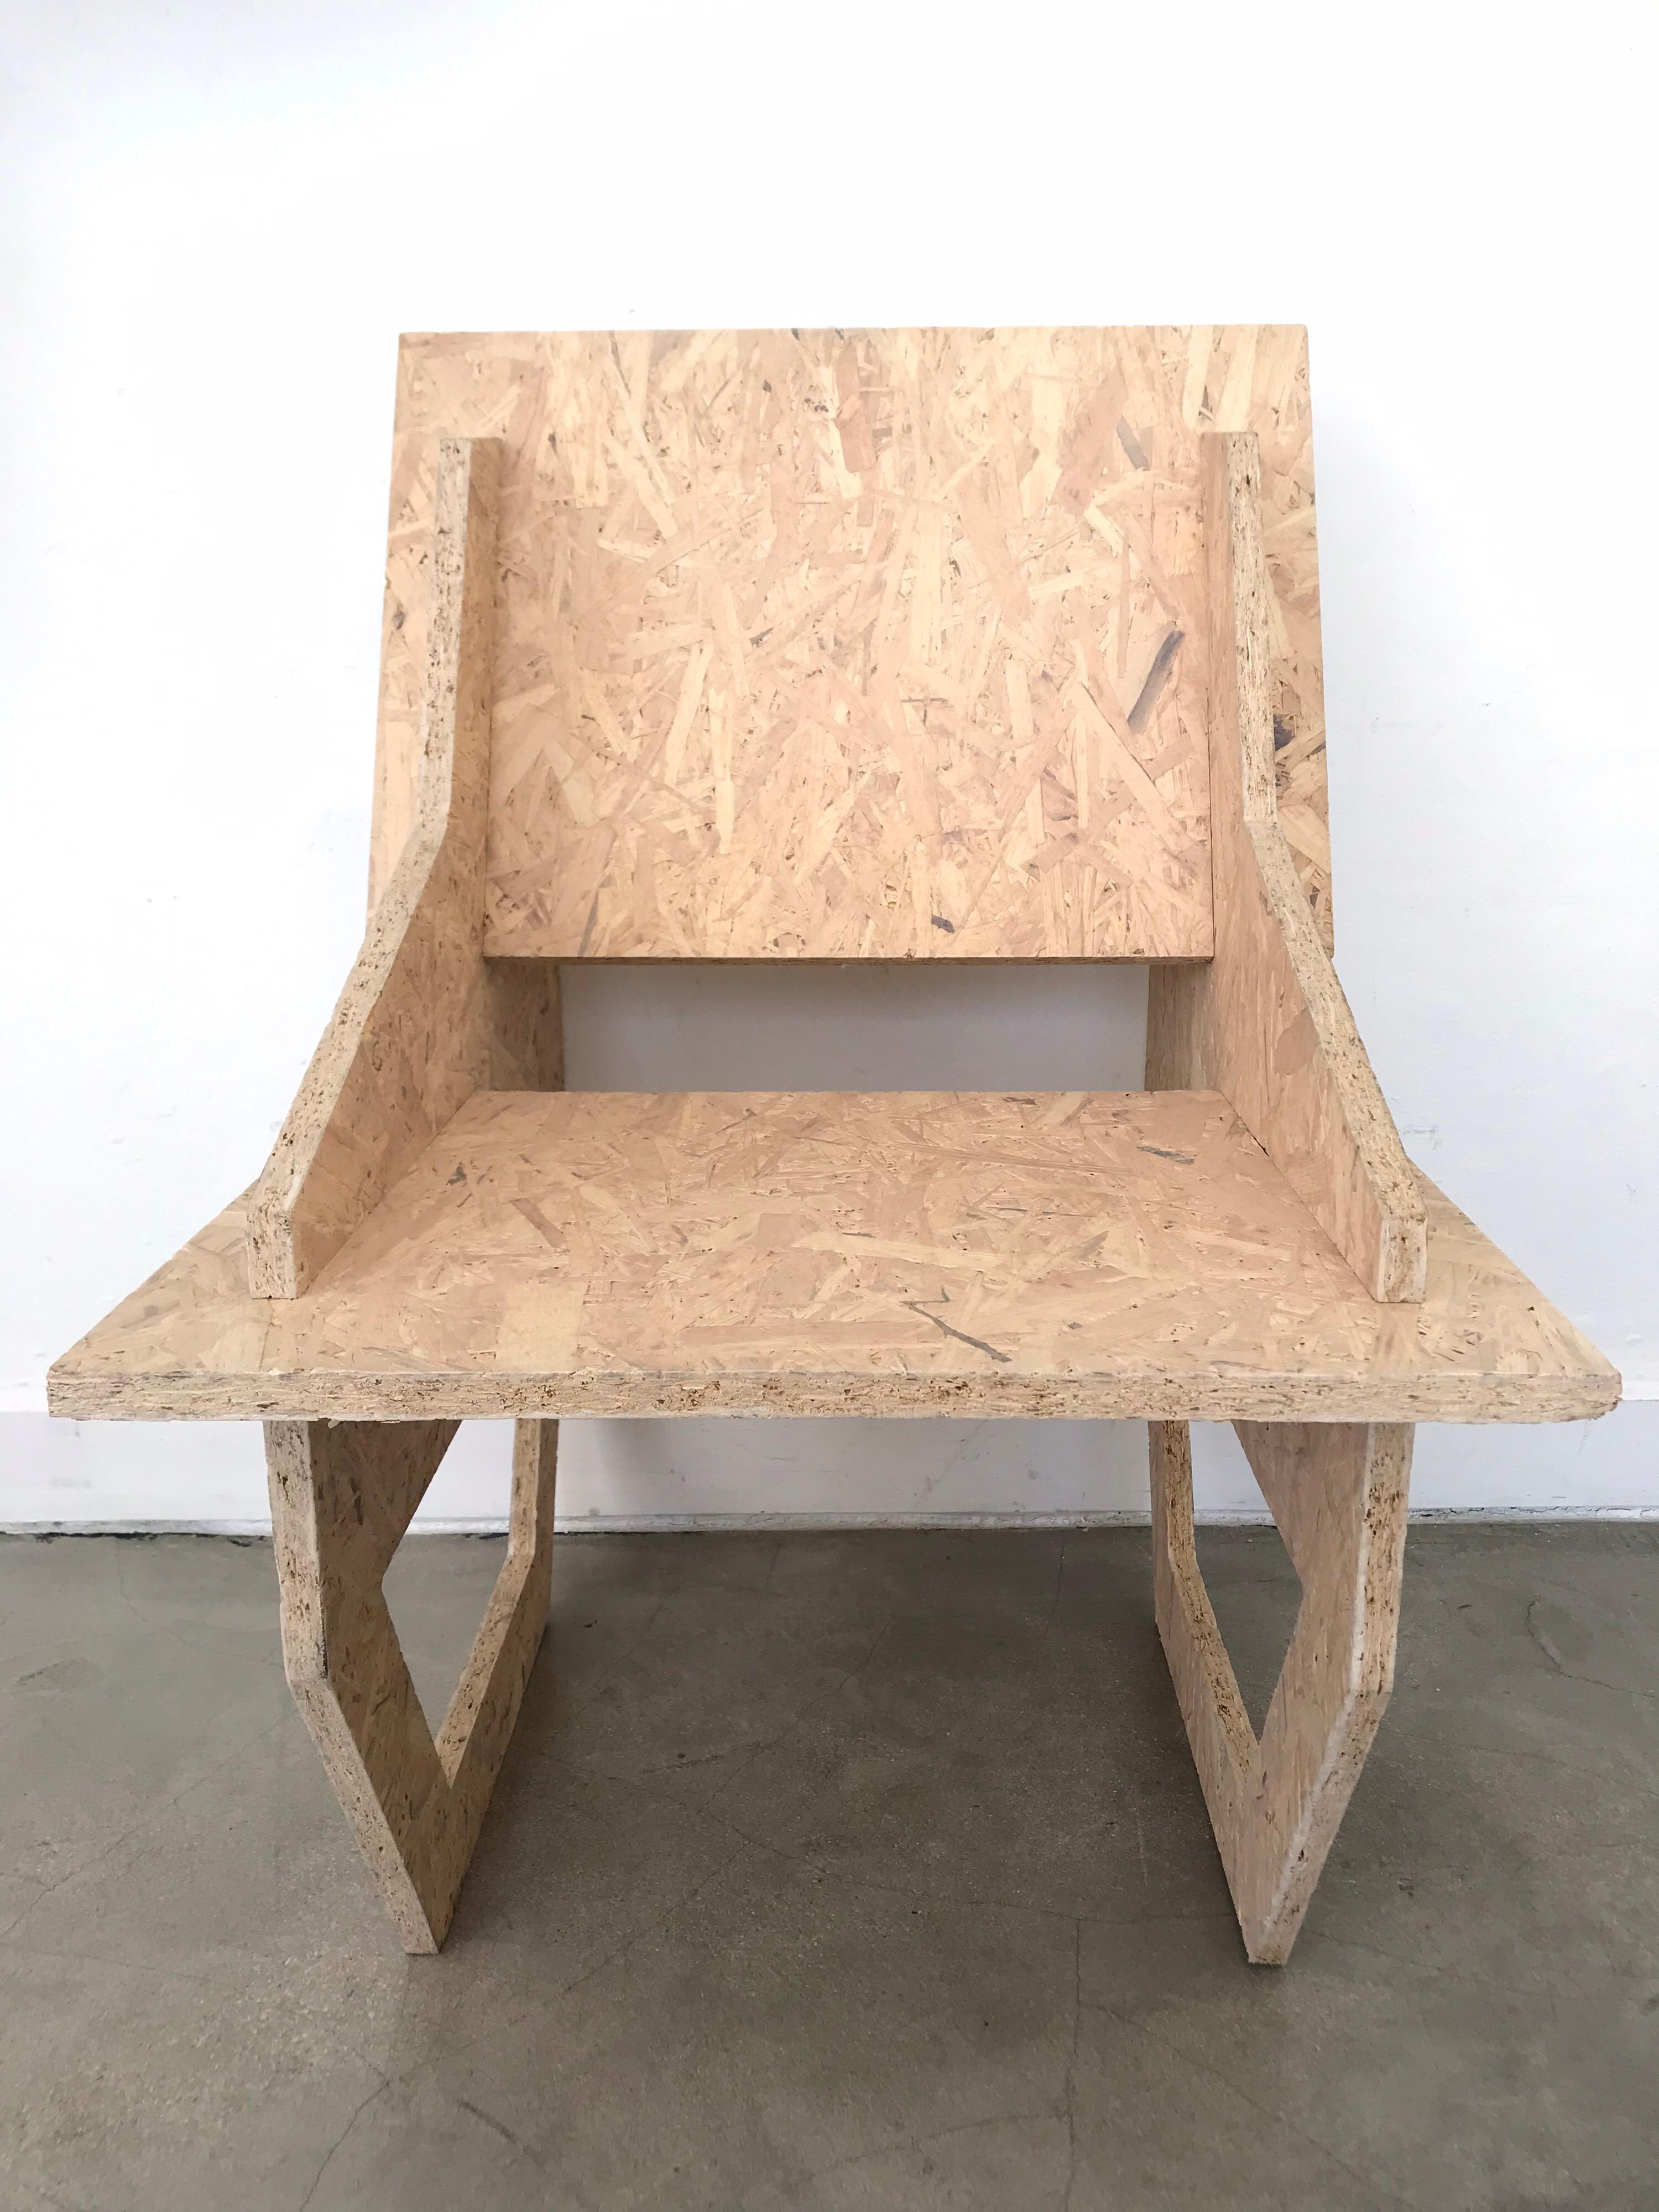 Stuhl im konstruktivistischen Stil, entworfen von Dominic Beattie, aus mit Kalk gewachstem OSB, 2018.